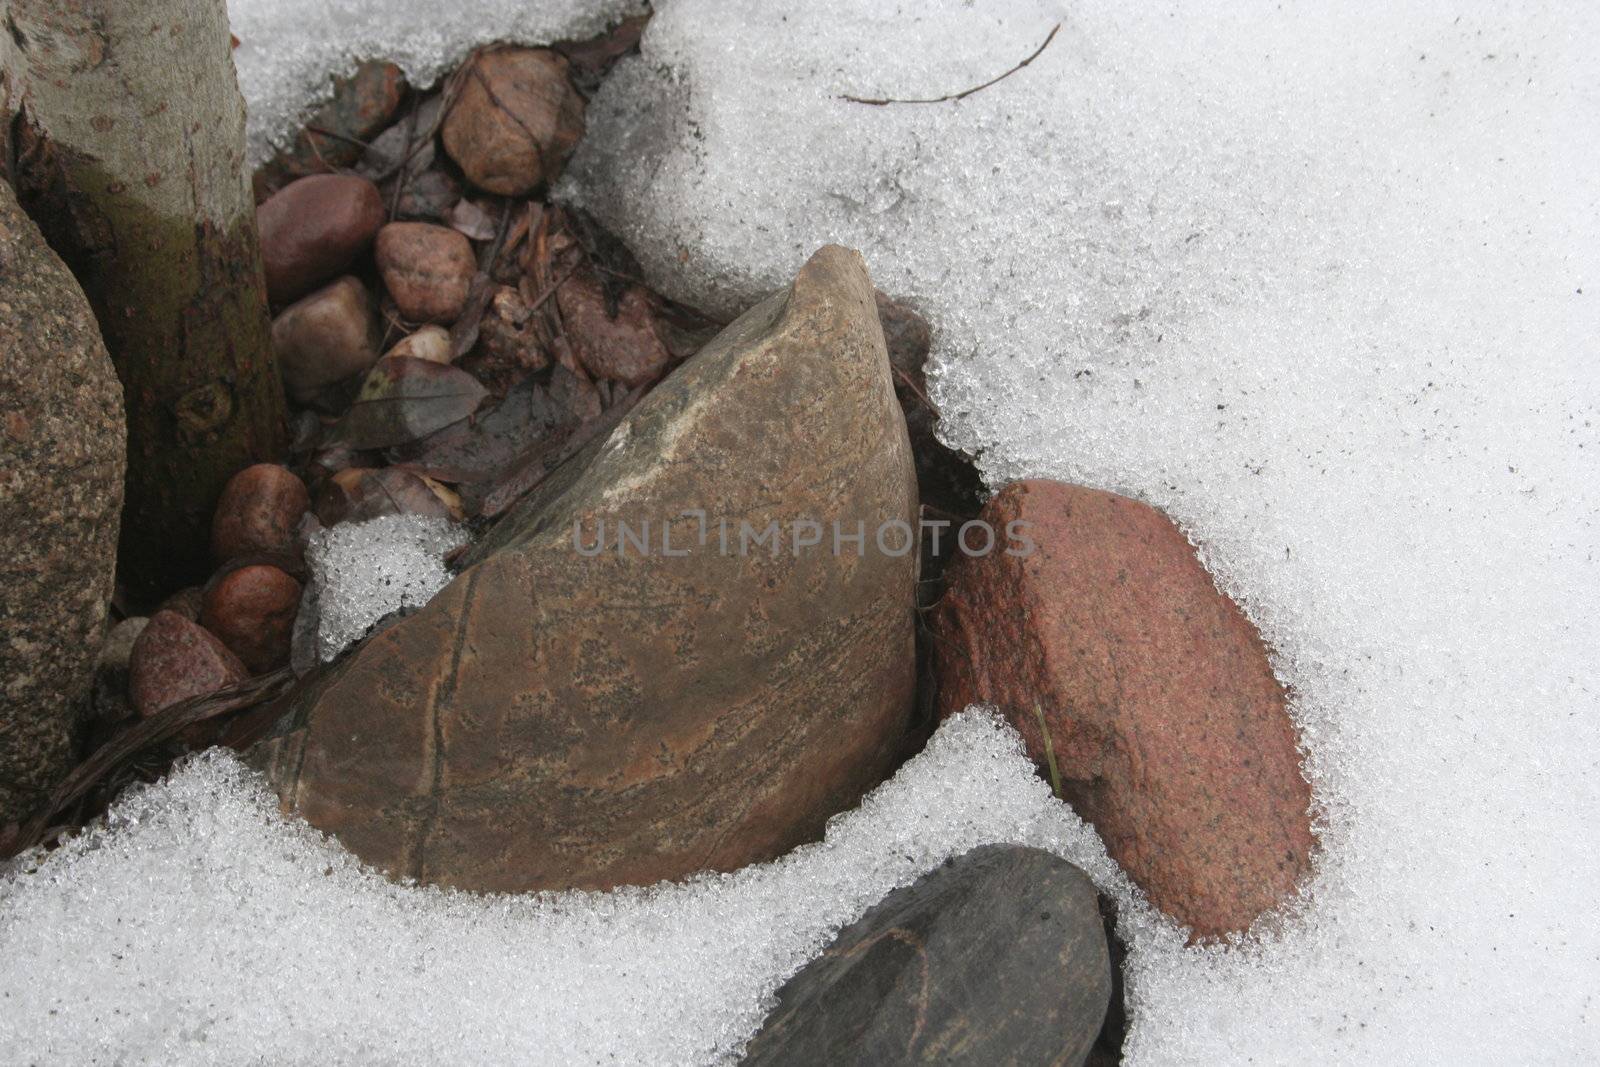 stones in the snow